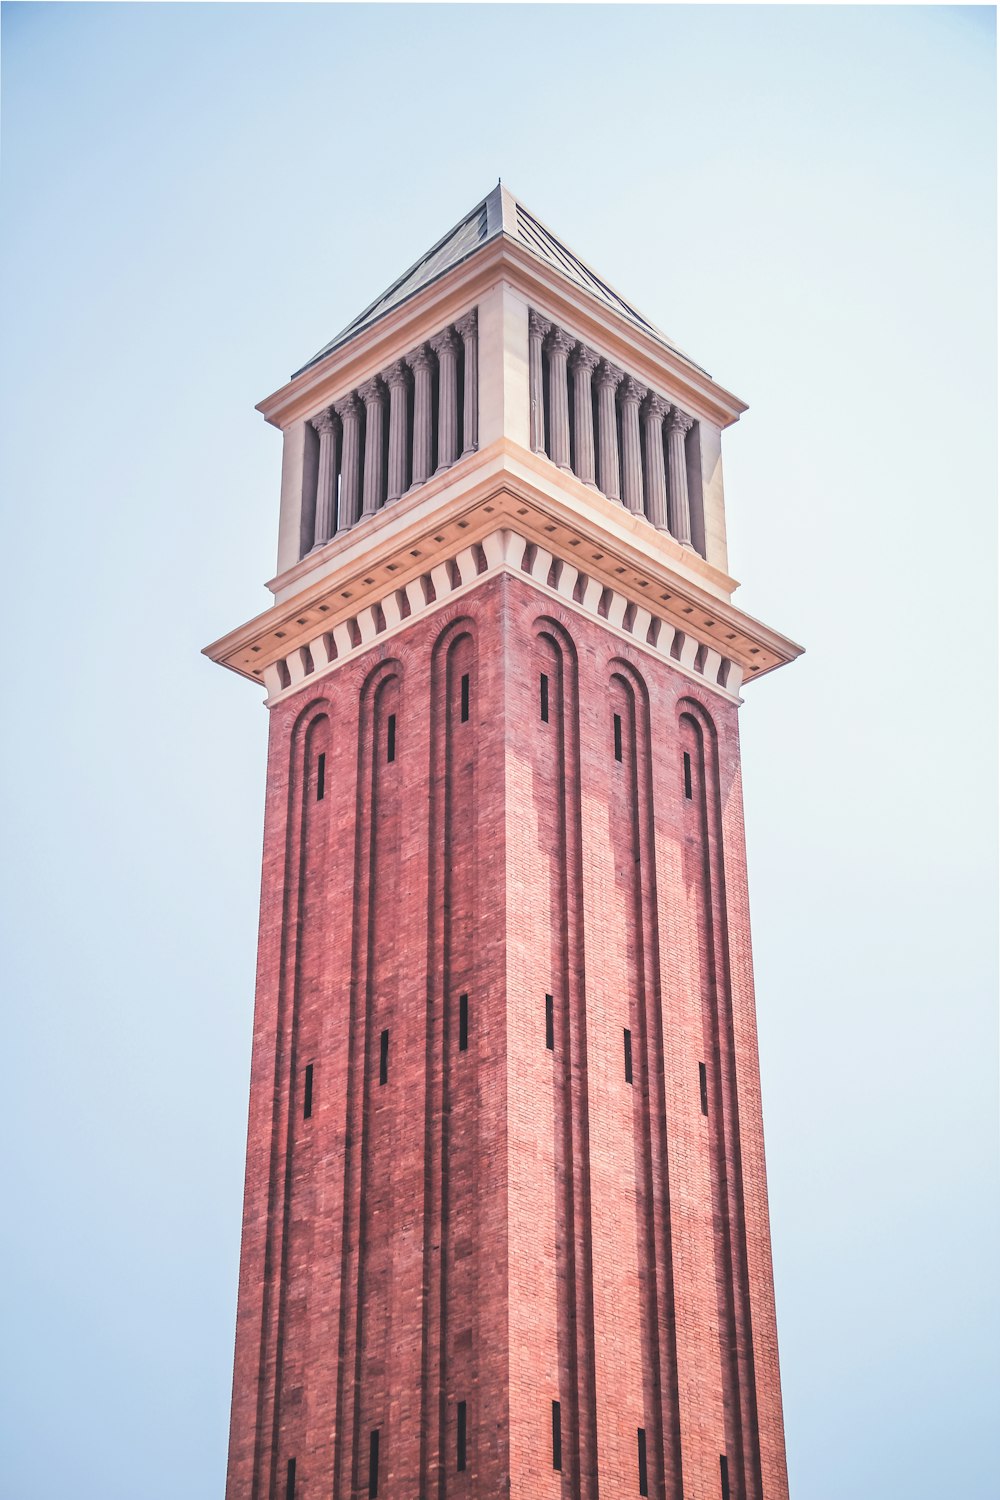 Low-Angle-Fotografie des braunen Turms unter einem ruhigen blauen Himmel